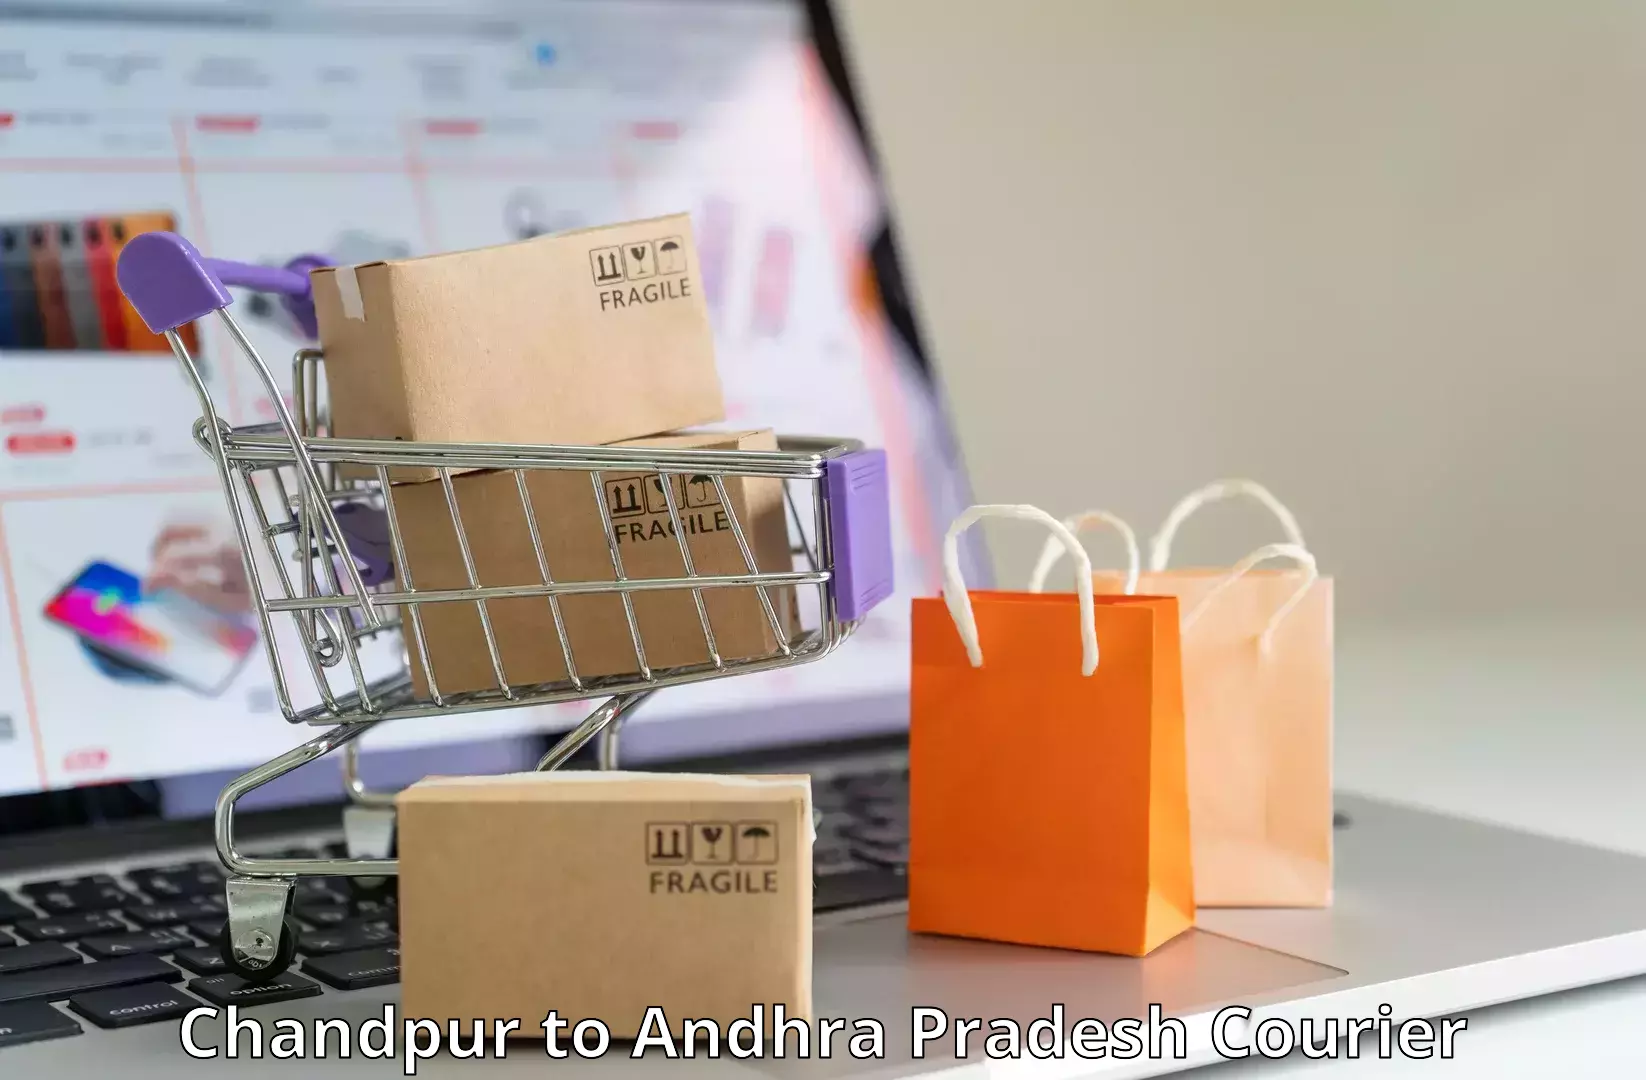 Custom courier packaging Chandpur to Pakala